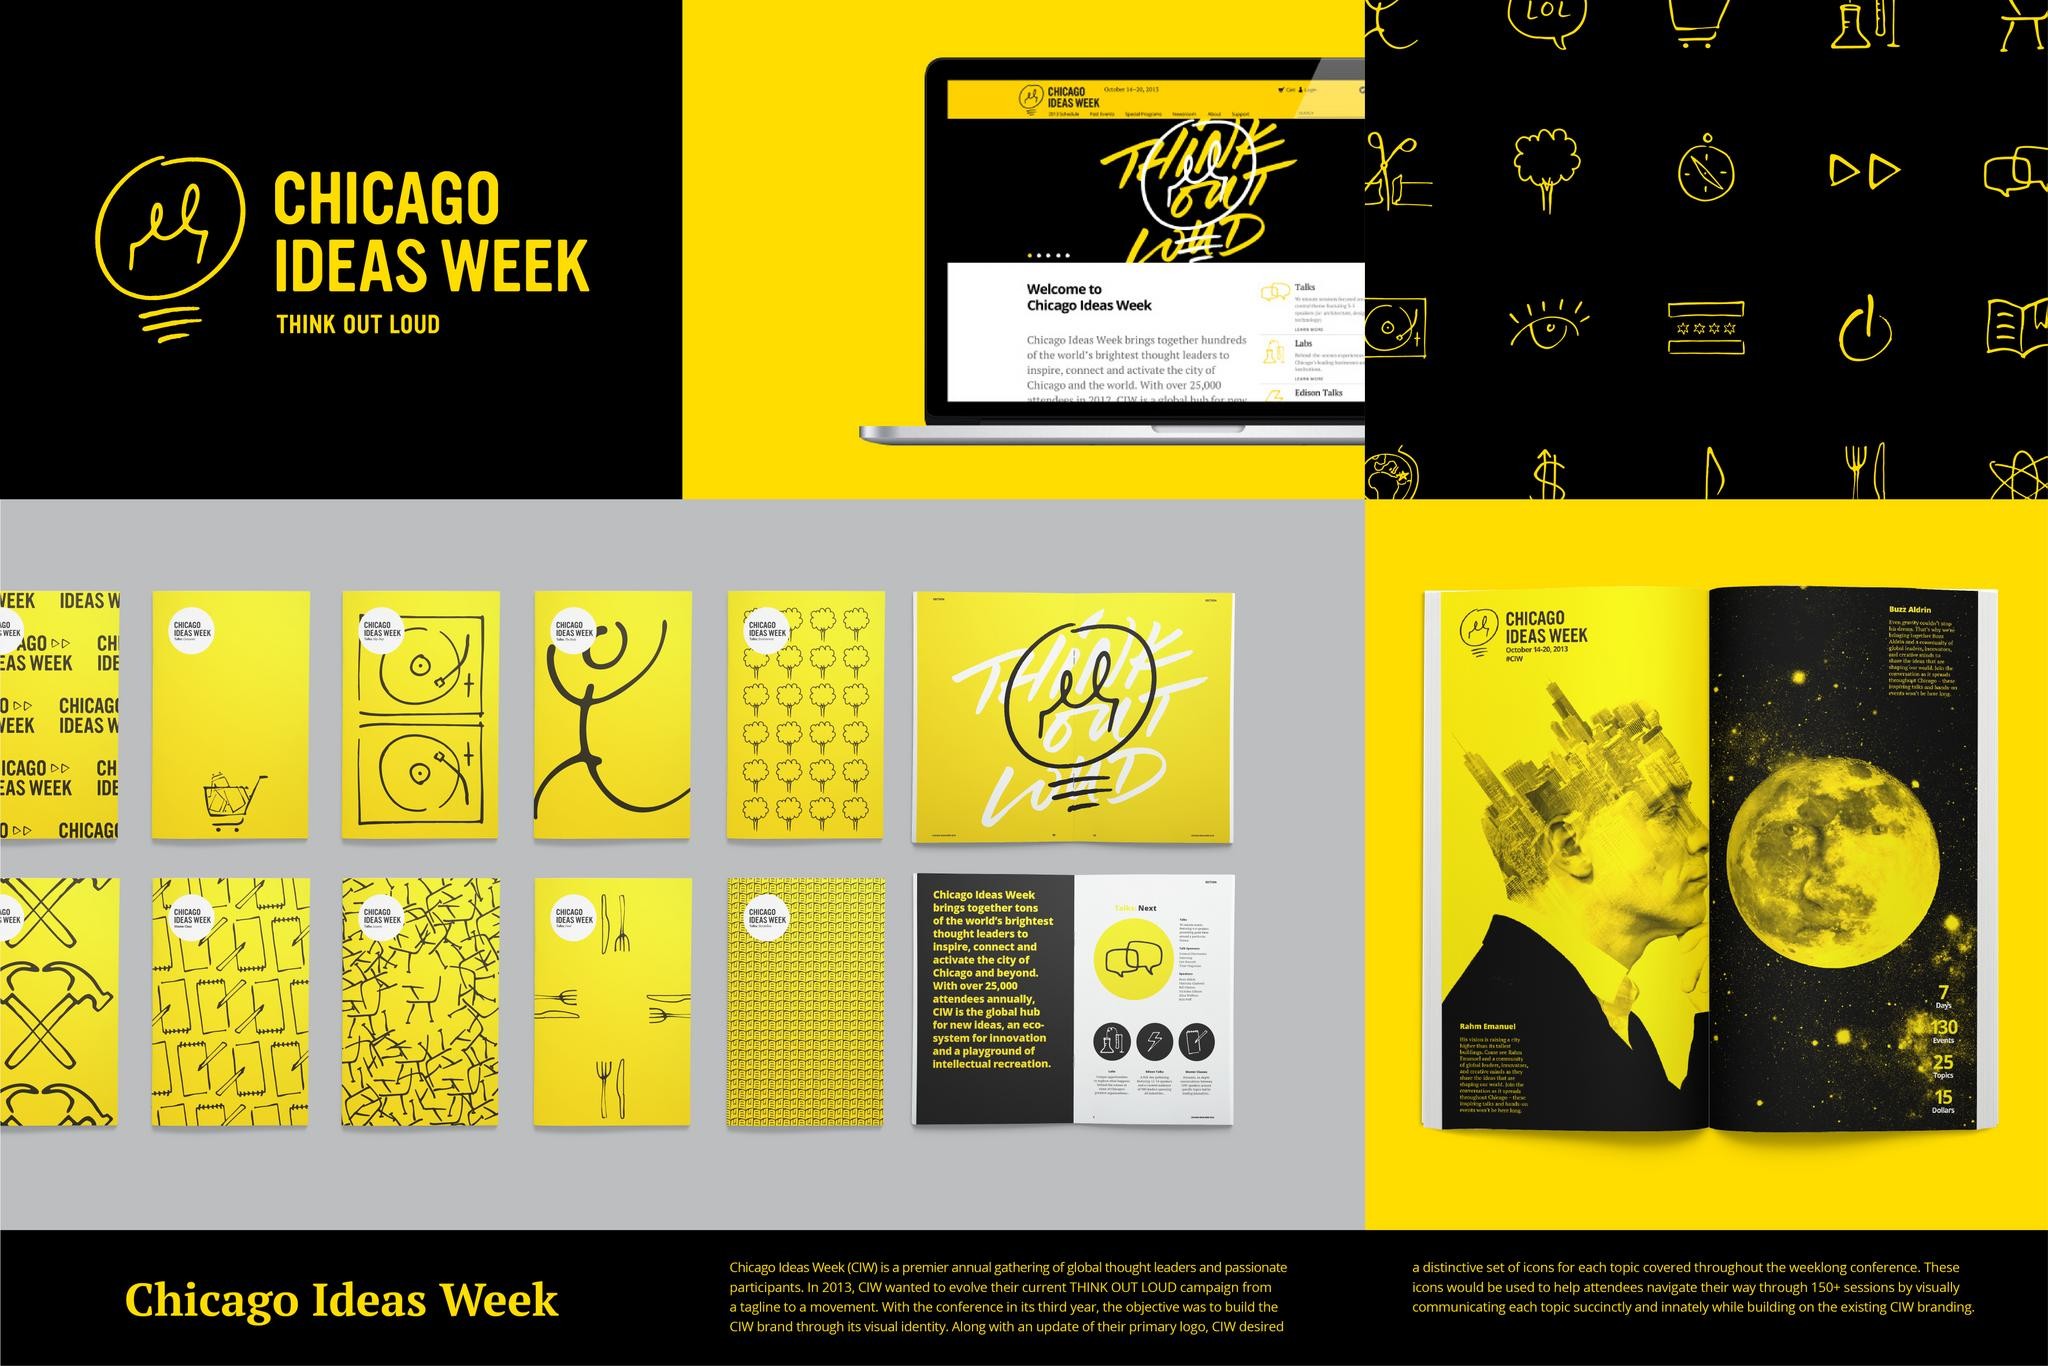 CHICAGO IDEAS WEEK 2013